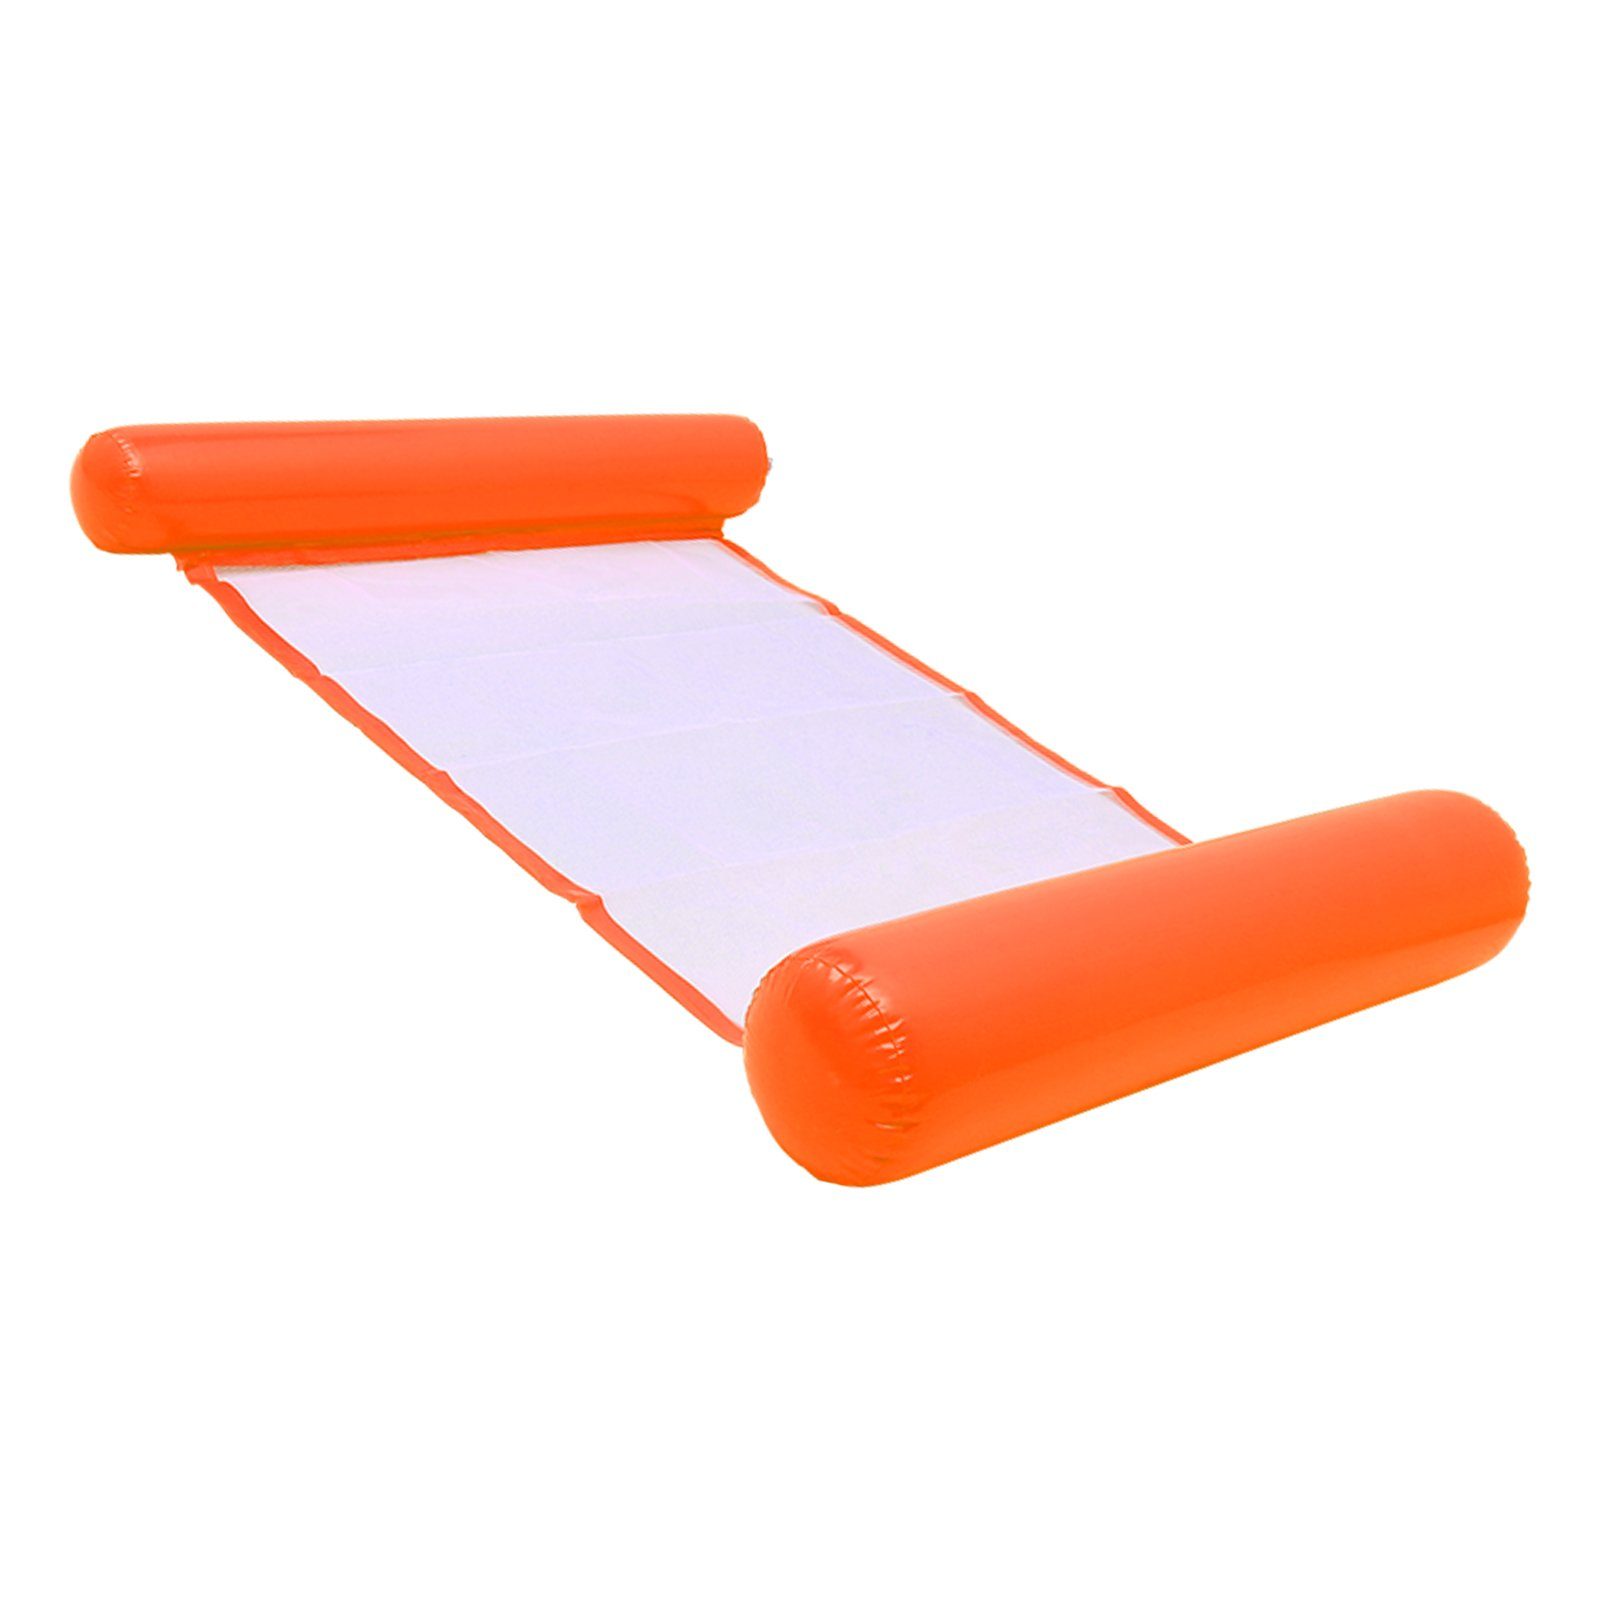 Lounge Schwimmreifen Orange luftmatratze Wasserliege Wasser-Hängematte hängematte Pool Loungesessel Gimisgu Schwimmbett Erwachsene hängematte, aufblasbare und aufblasbare Aufblasbares für Kinder) (4-in-1